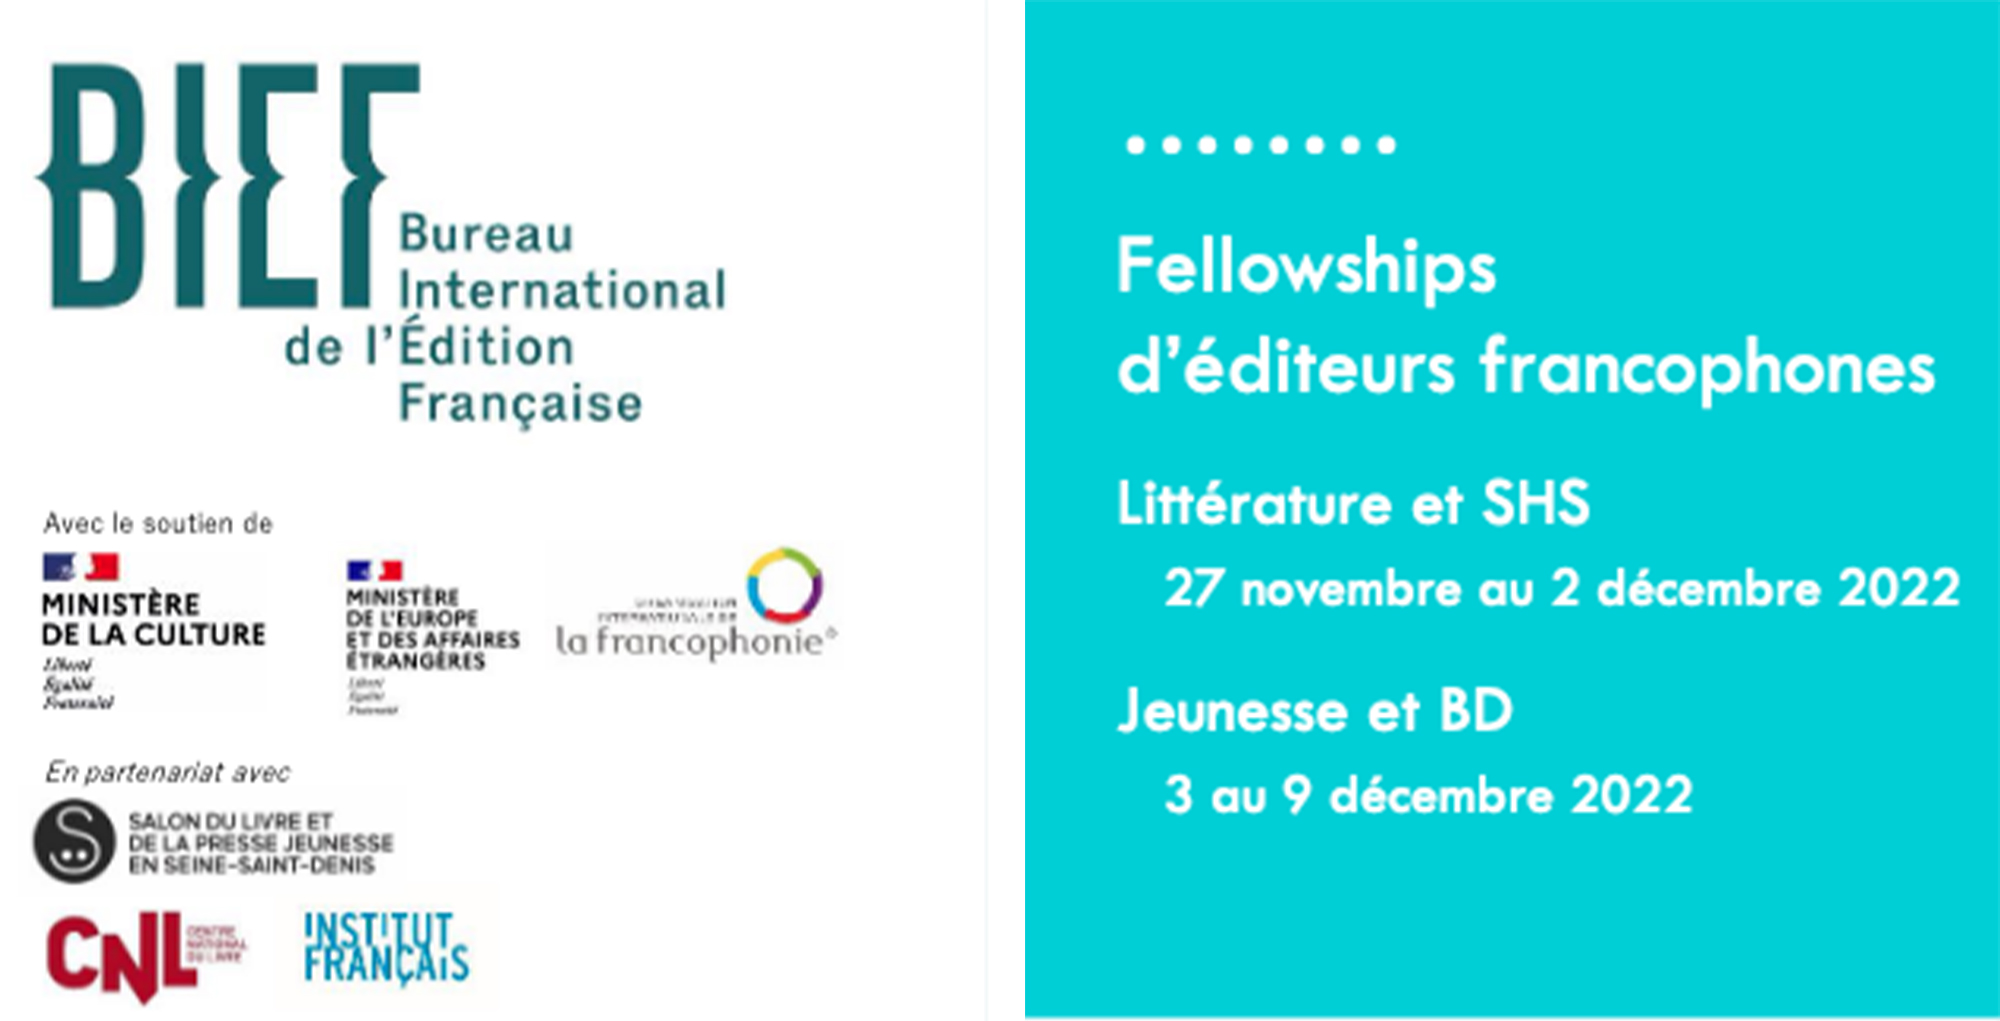 Fellowships d’éditeurs francophones  